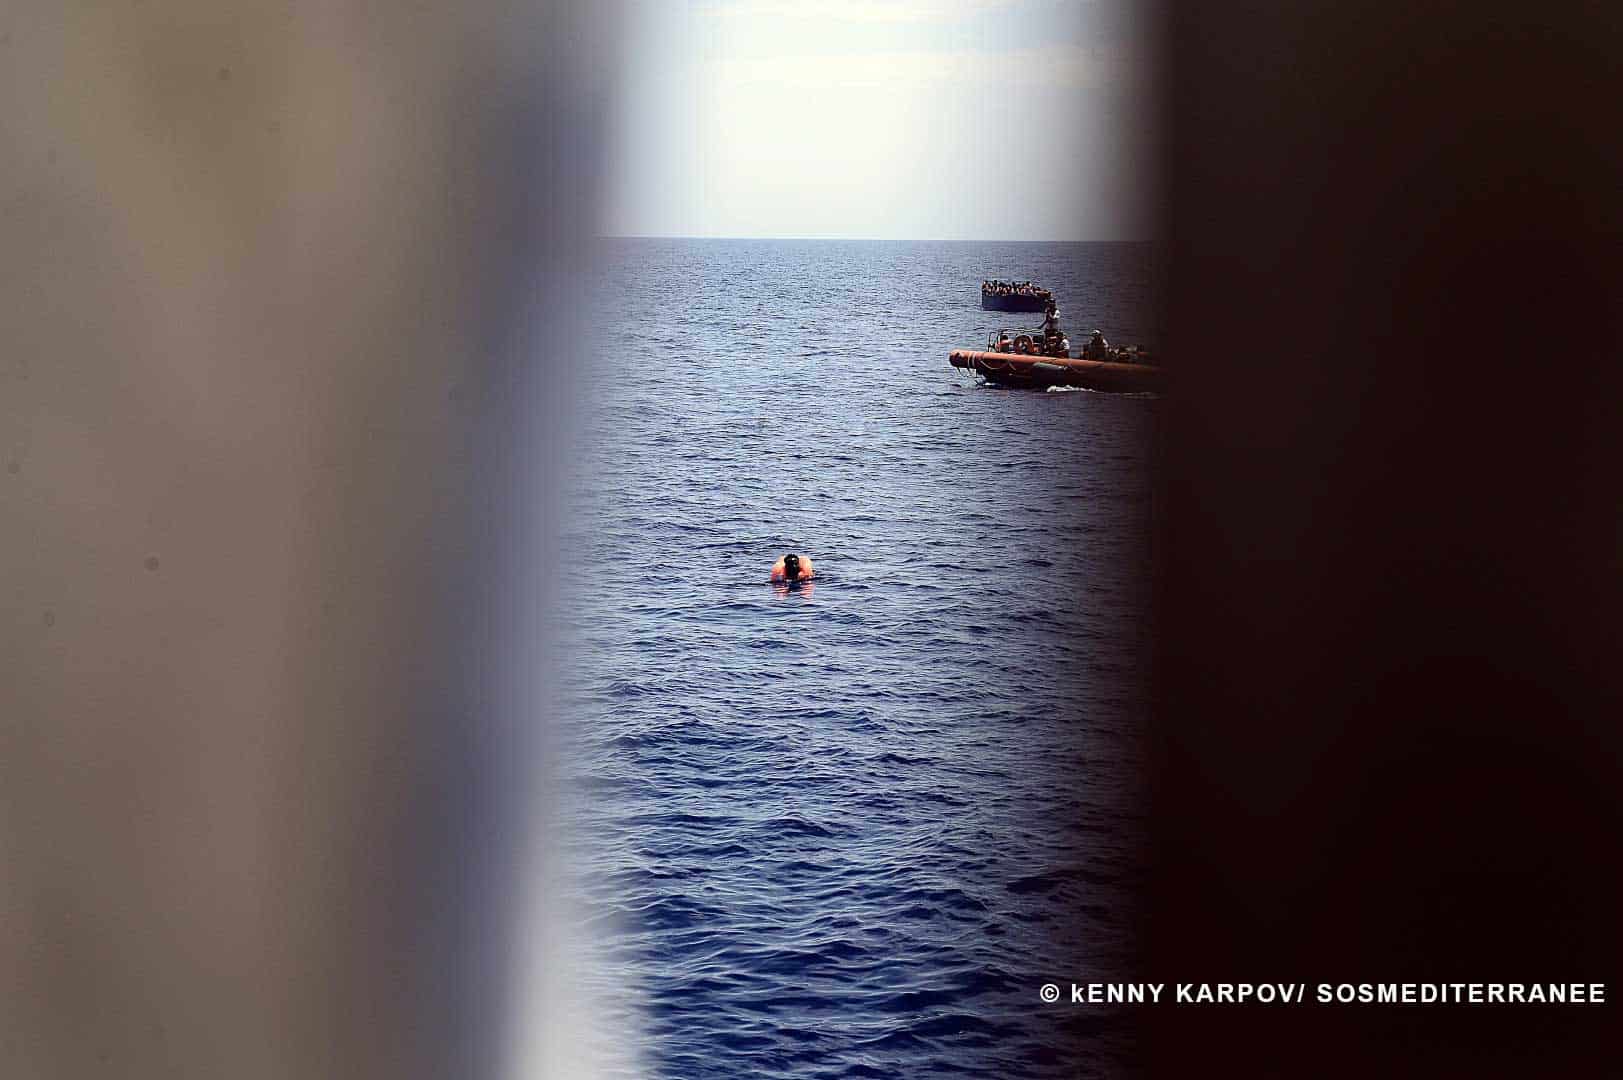 COMUNICATO STAMPA – 1.004 persone soccorse martedì dalla nave Aquarius – operazioni di soccorso interrotte da colpi di pistola